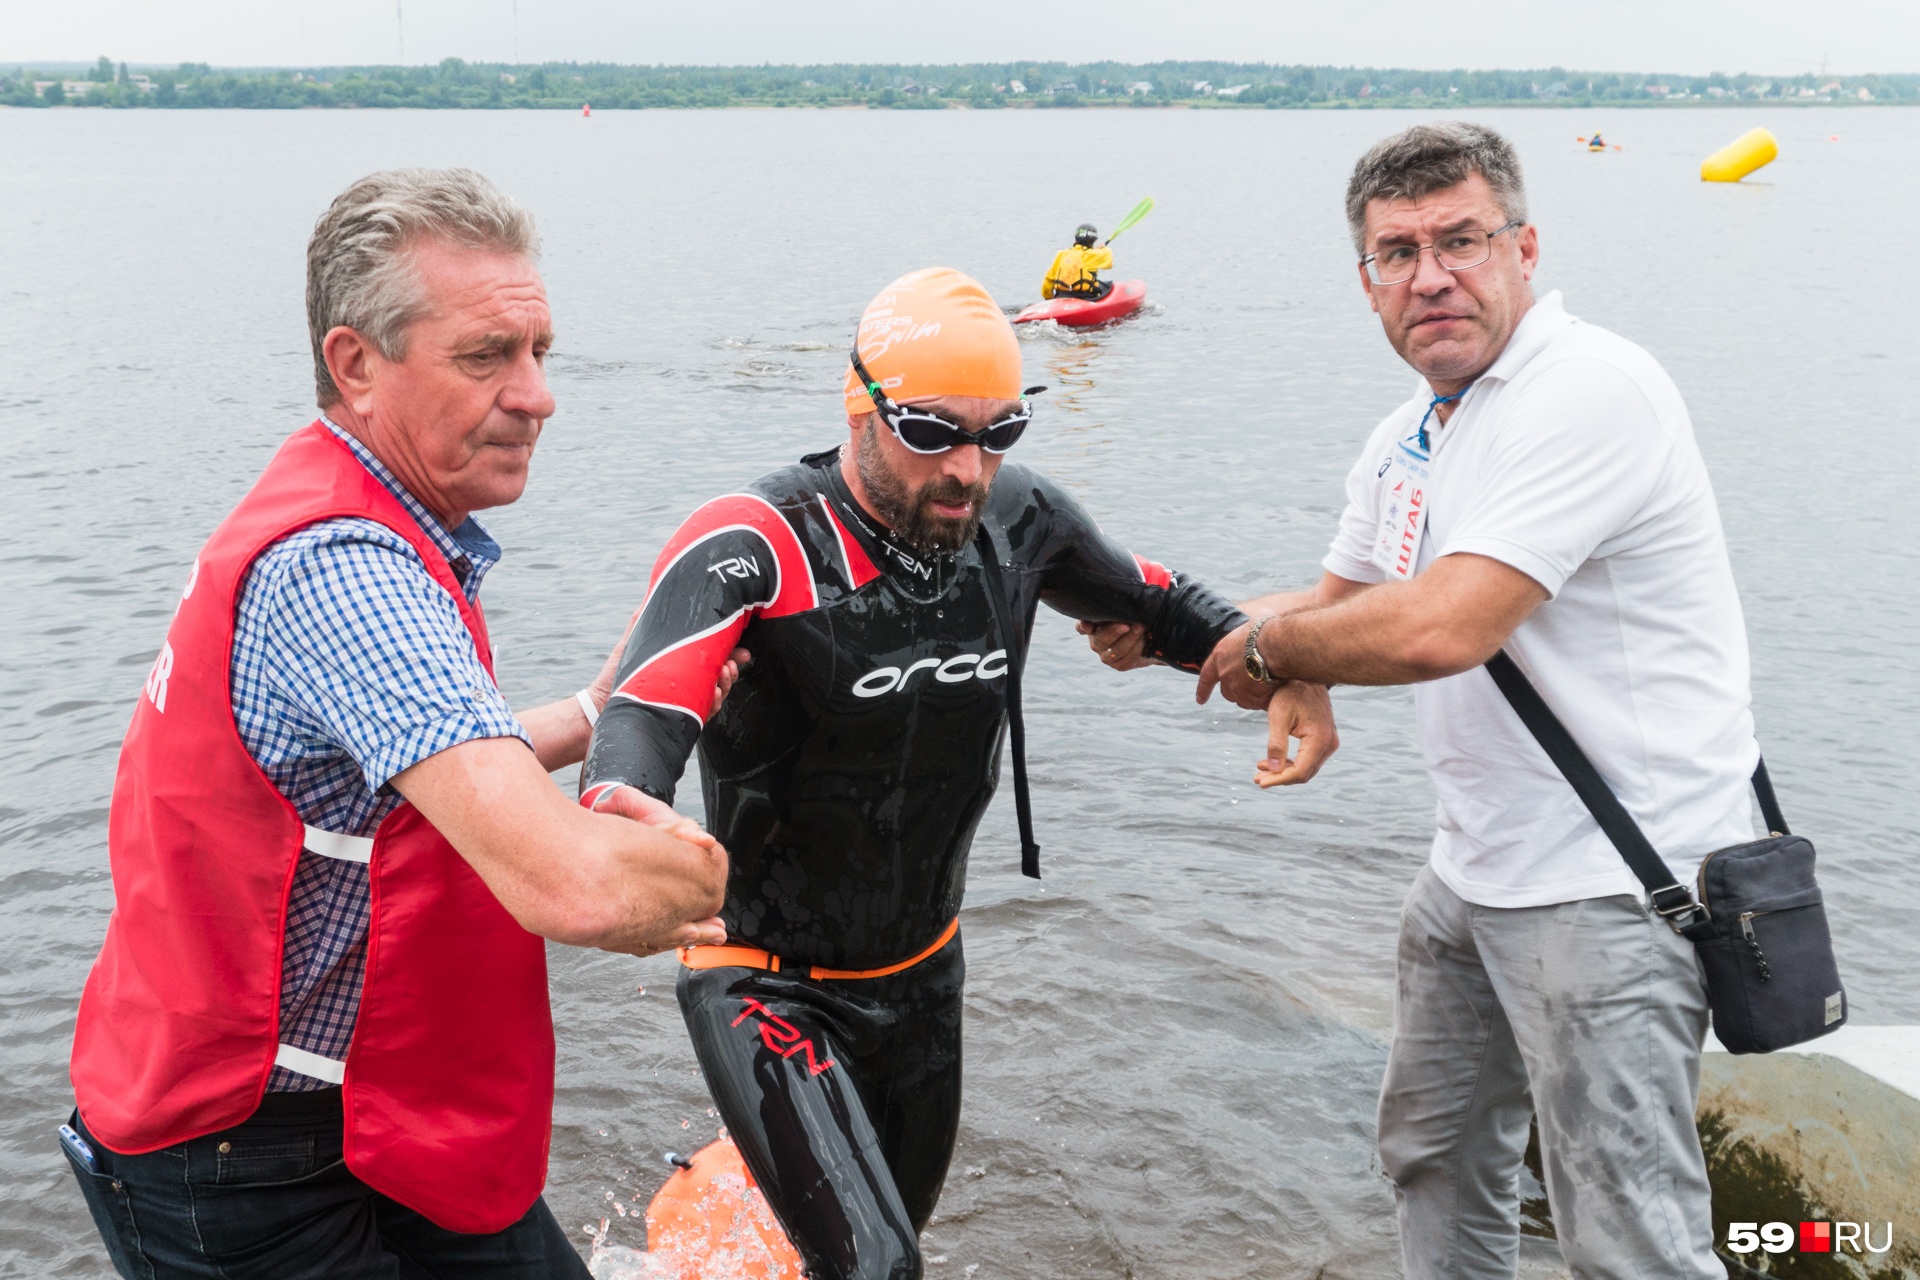 На финише организаторы и волонтеры помогали спортсменам выйти из воды